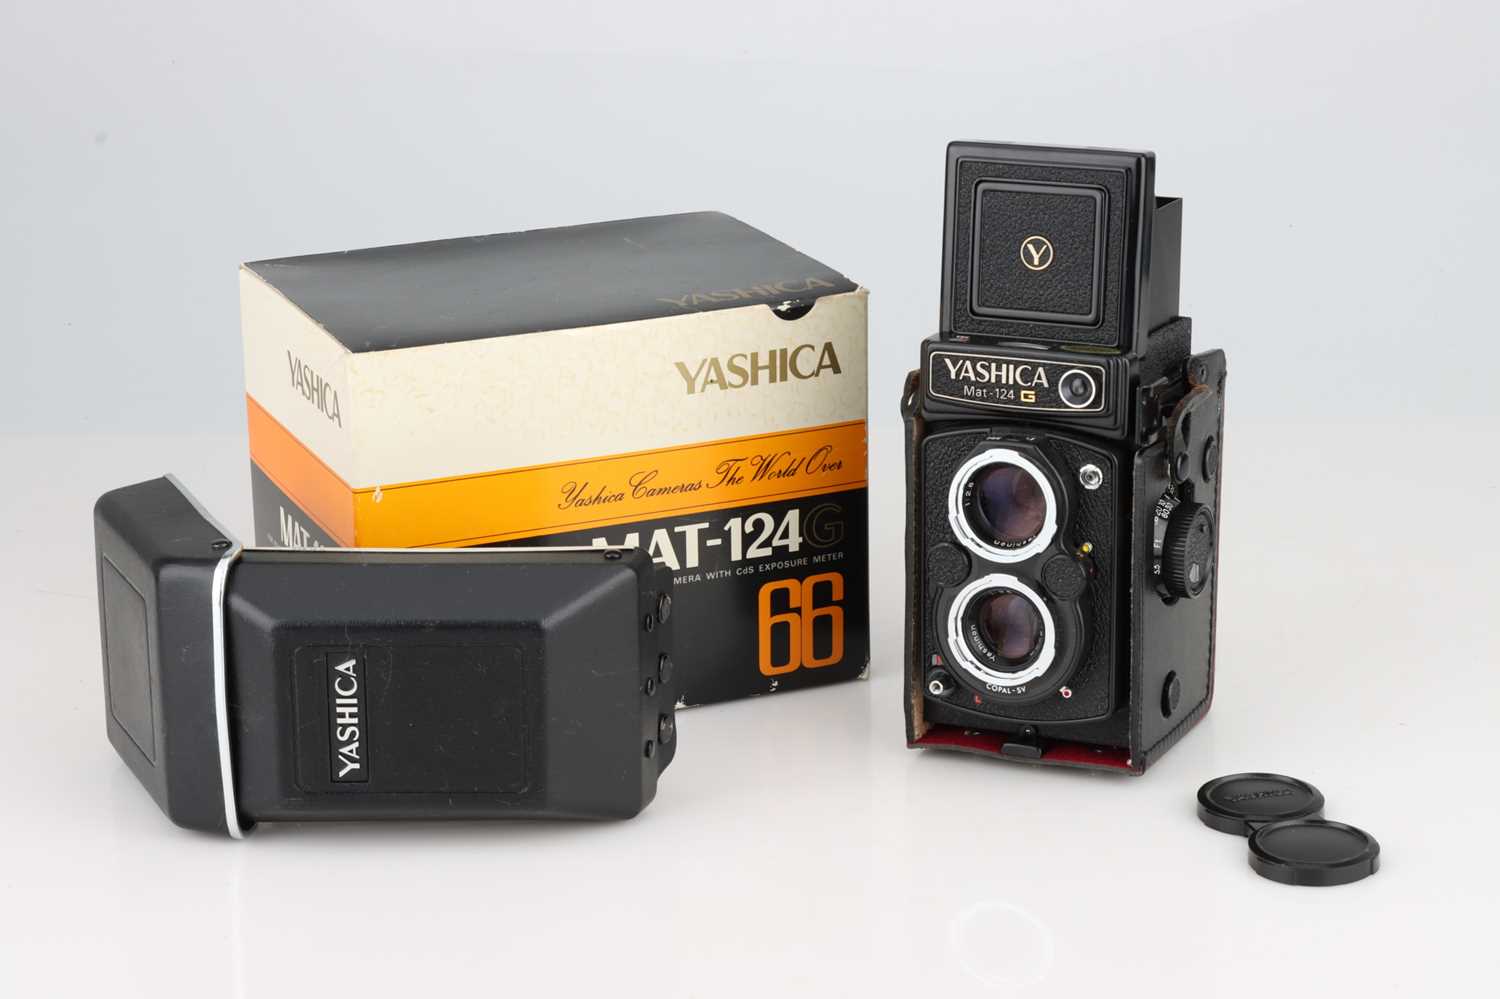 A Yashica MAT-124G Medium Format TLR Camera,